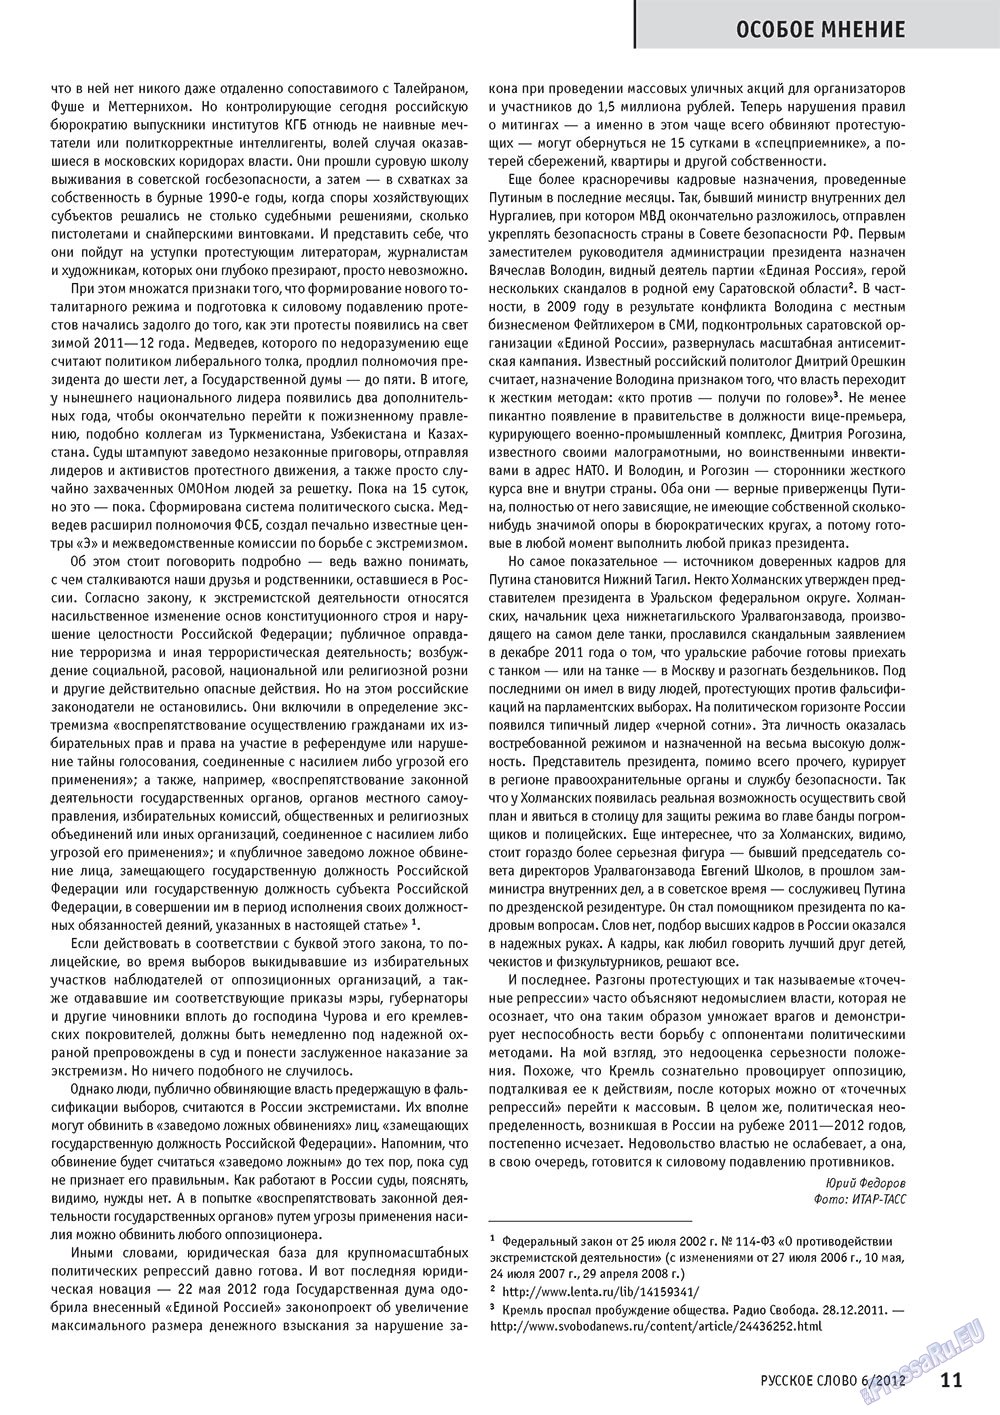 Русское слово, журнал. 2012 №6 стр.11